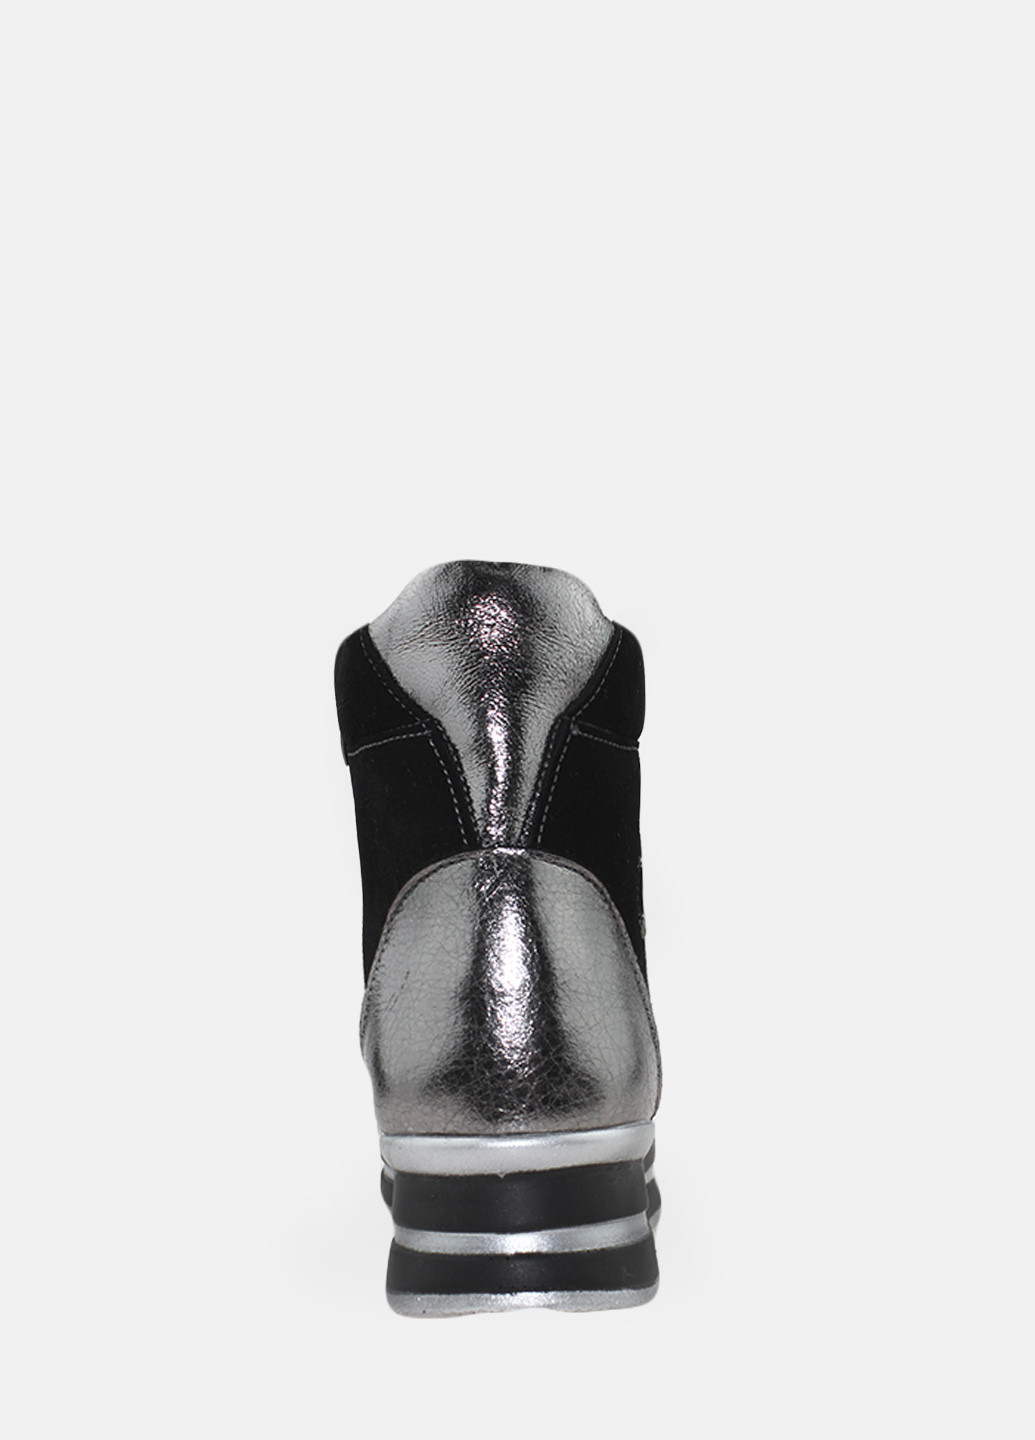 Зимние ботинки ry500 никель-черный Yta из натуральной замши